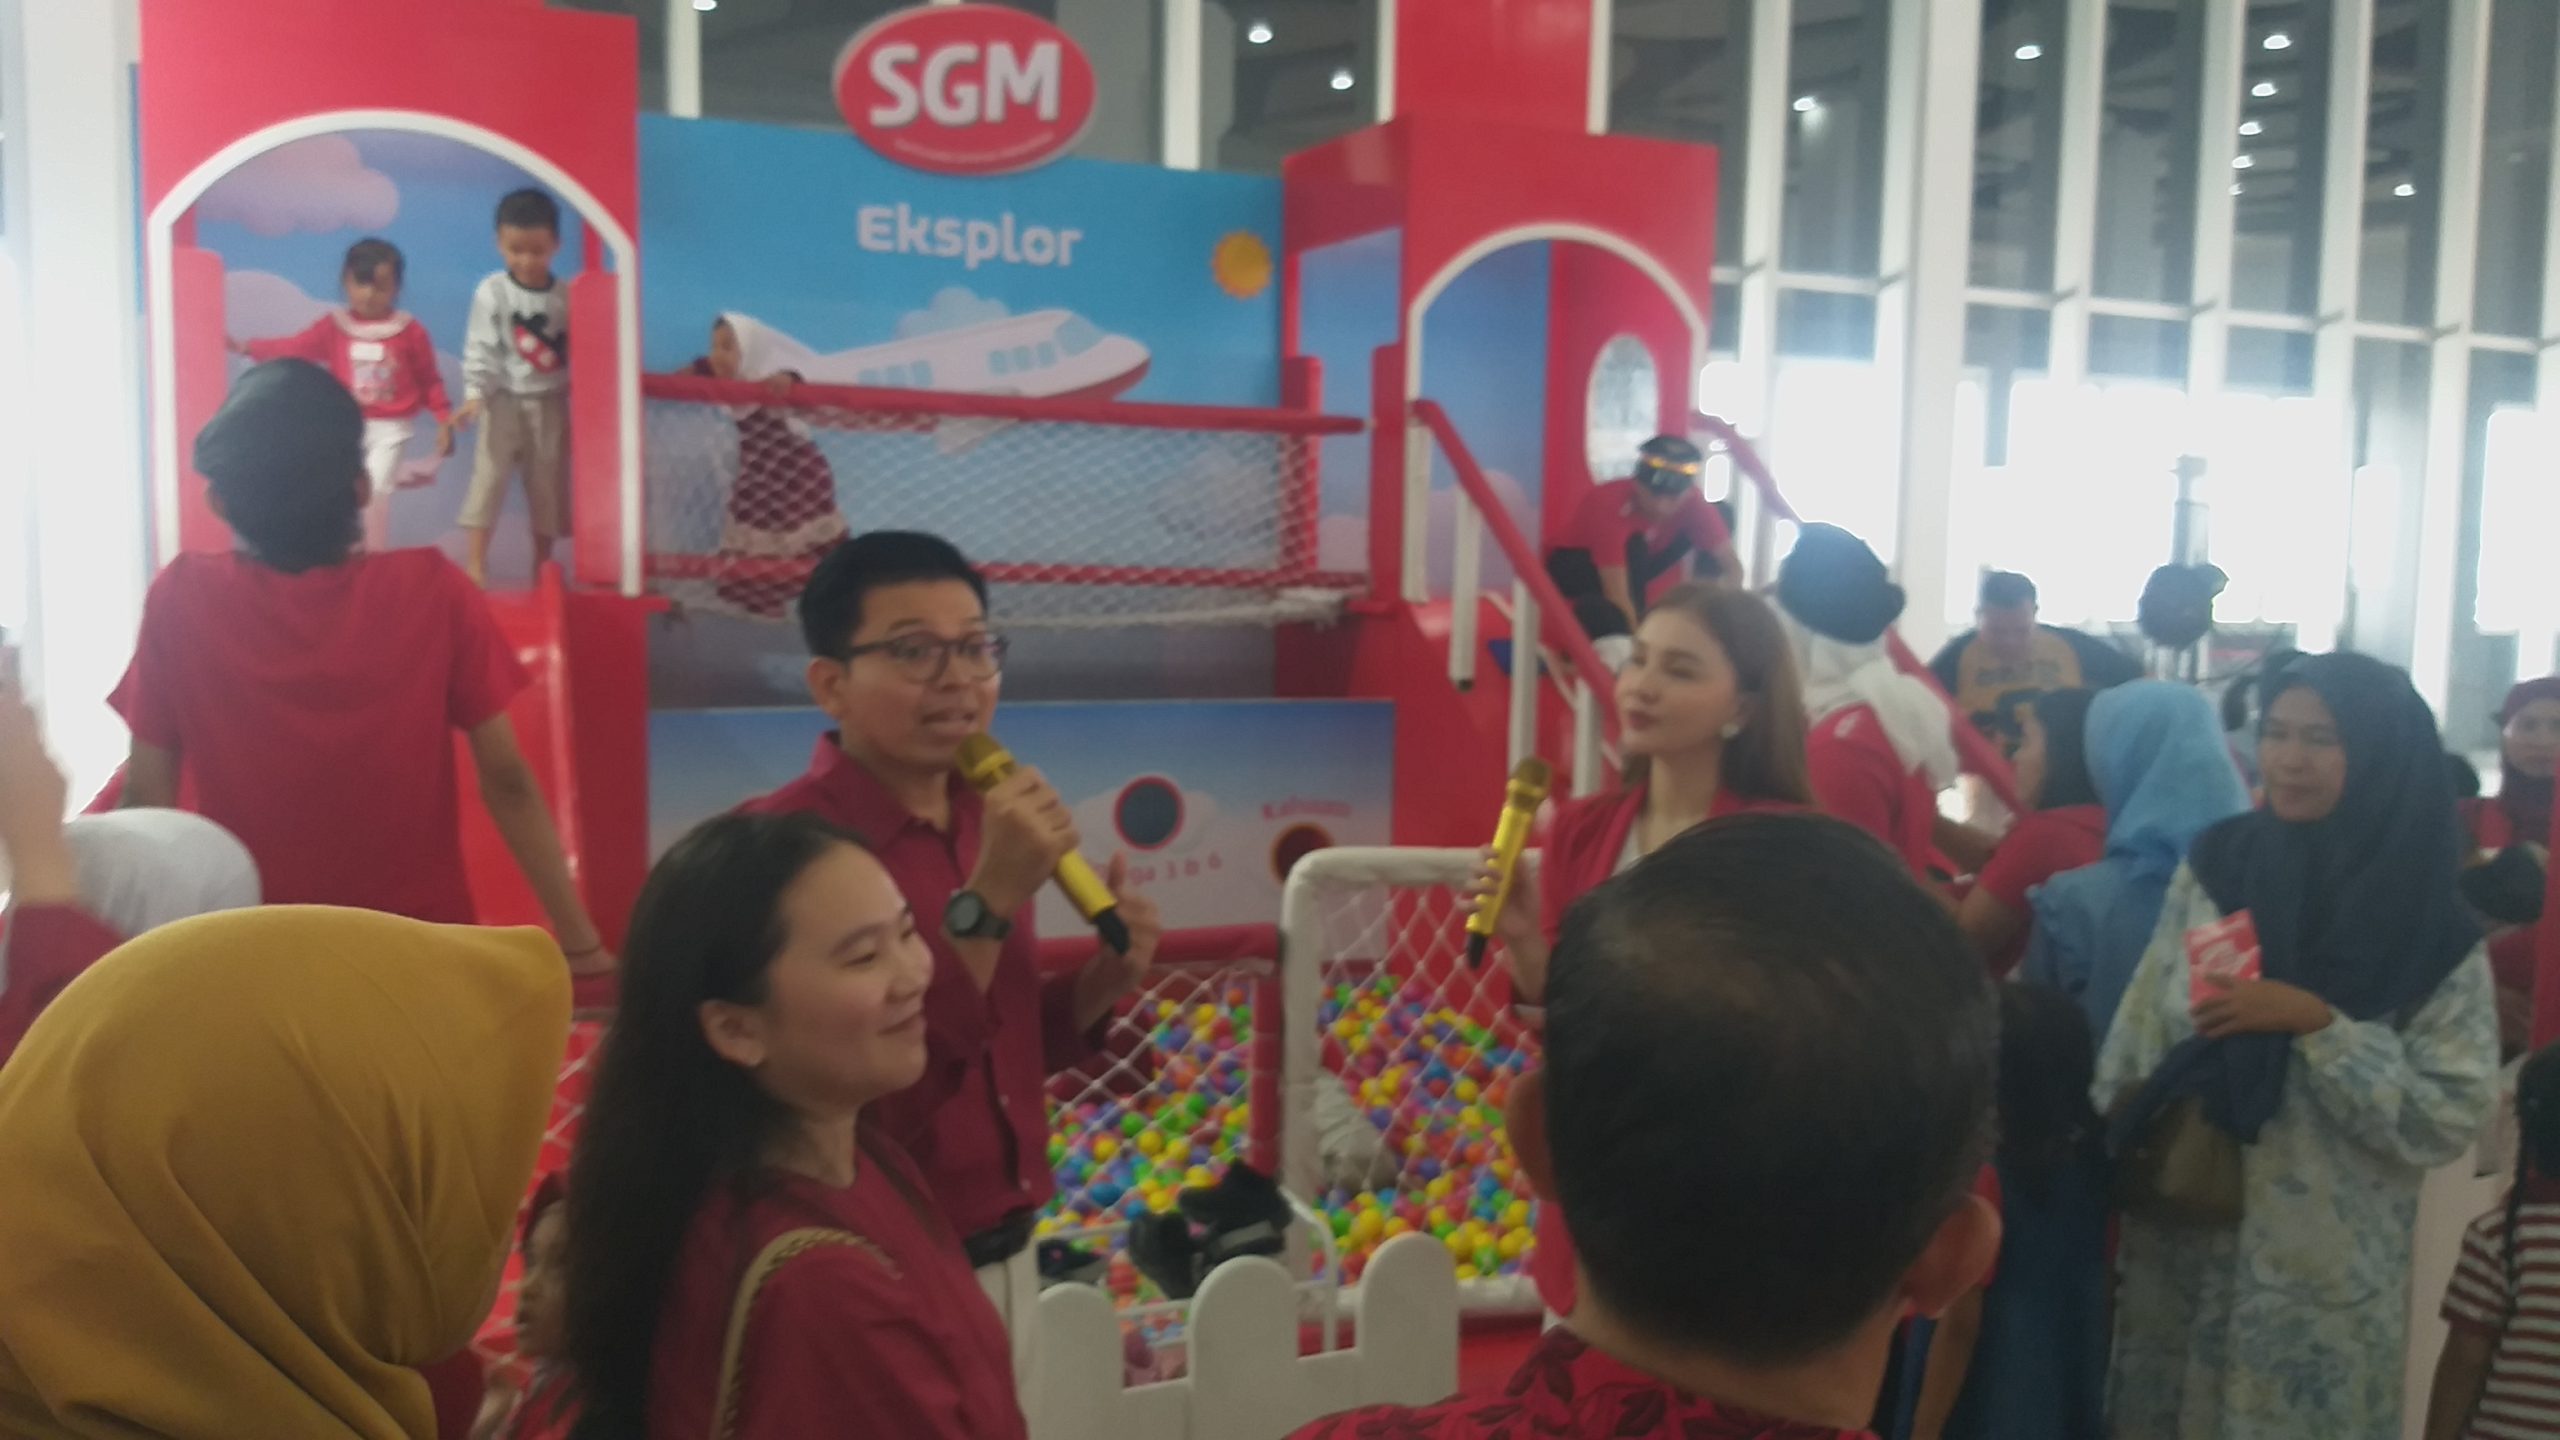 SGM Eksplor Hadirkan Festival Anak Generasi Maju di Kota Palembang, Dukung Anak Tumbuh Maksimal